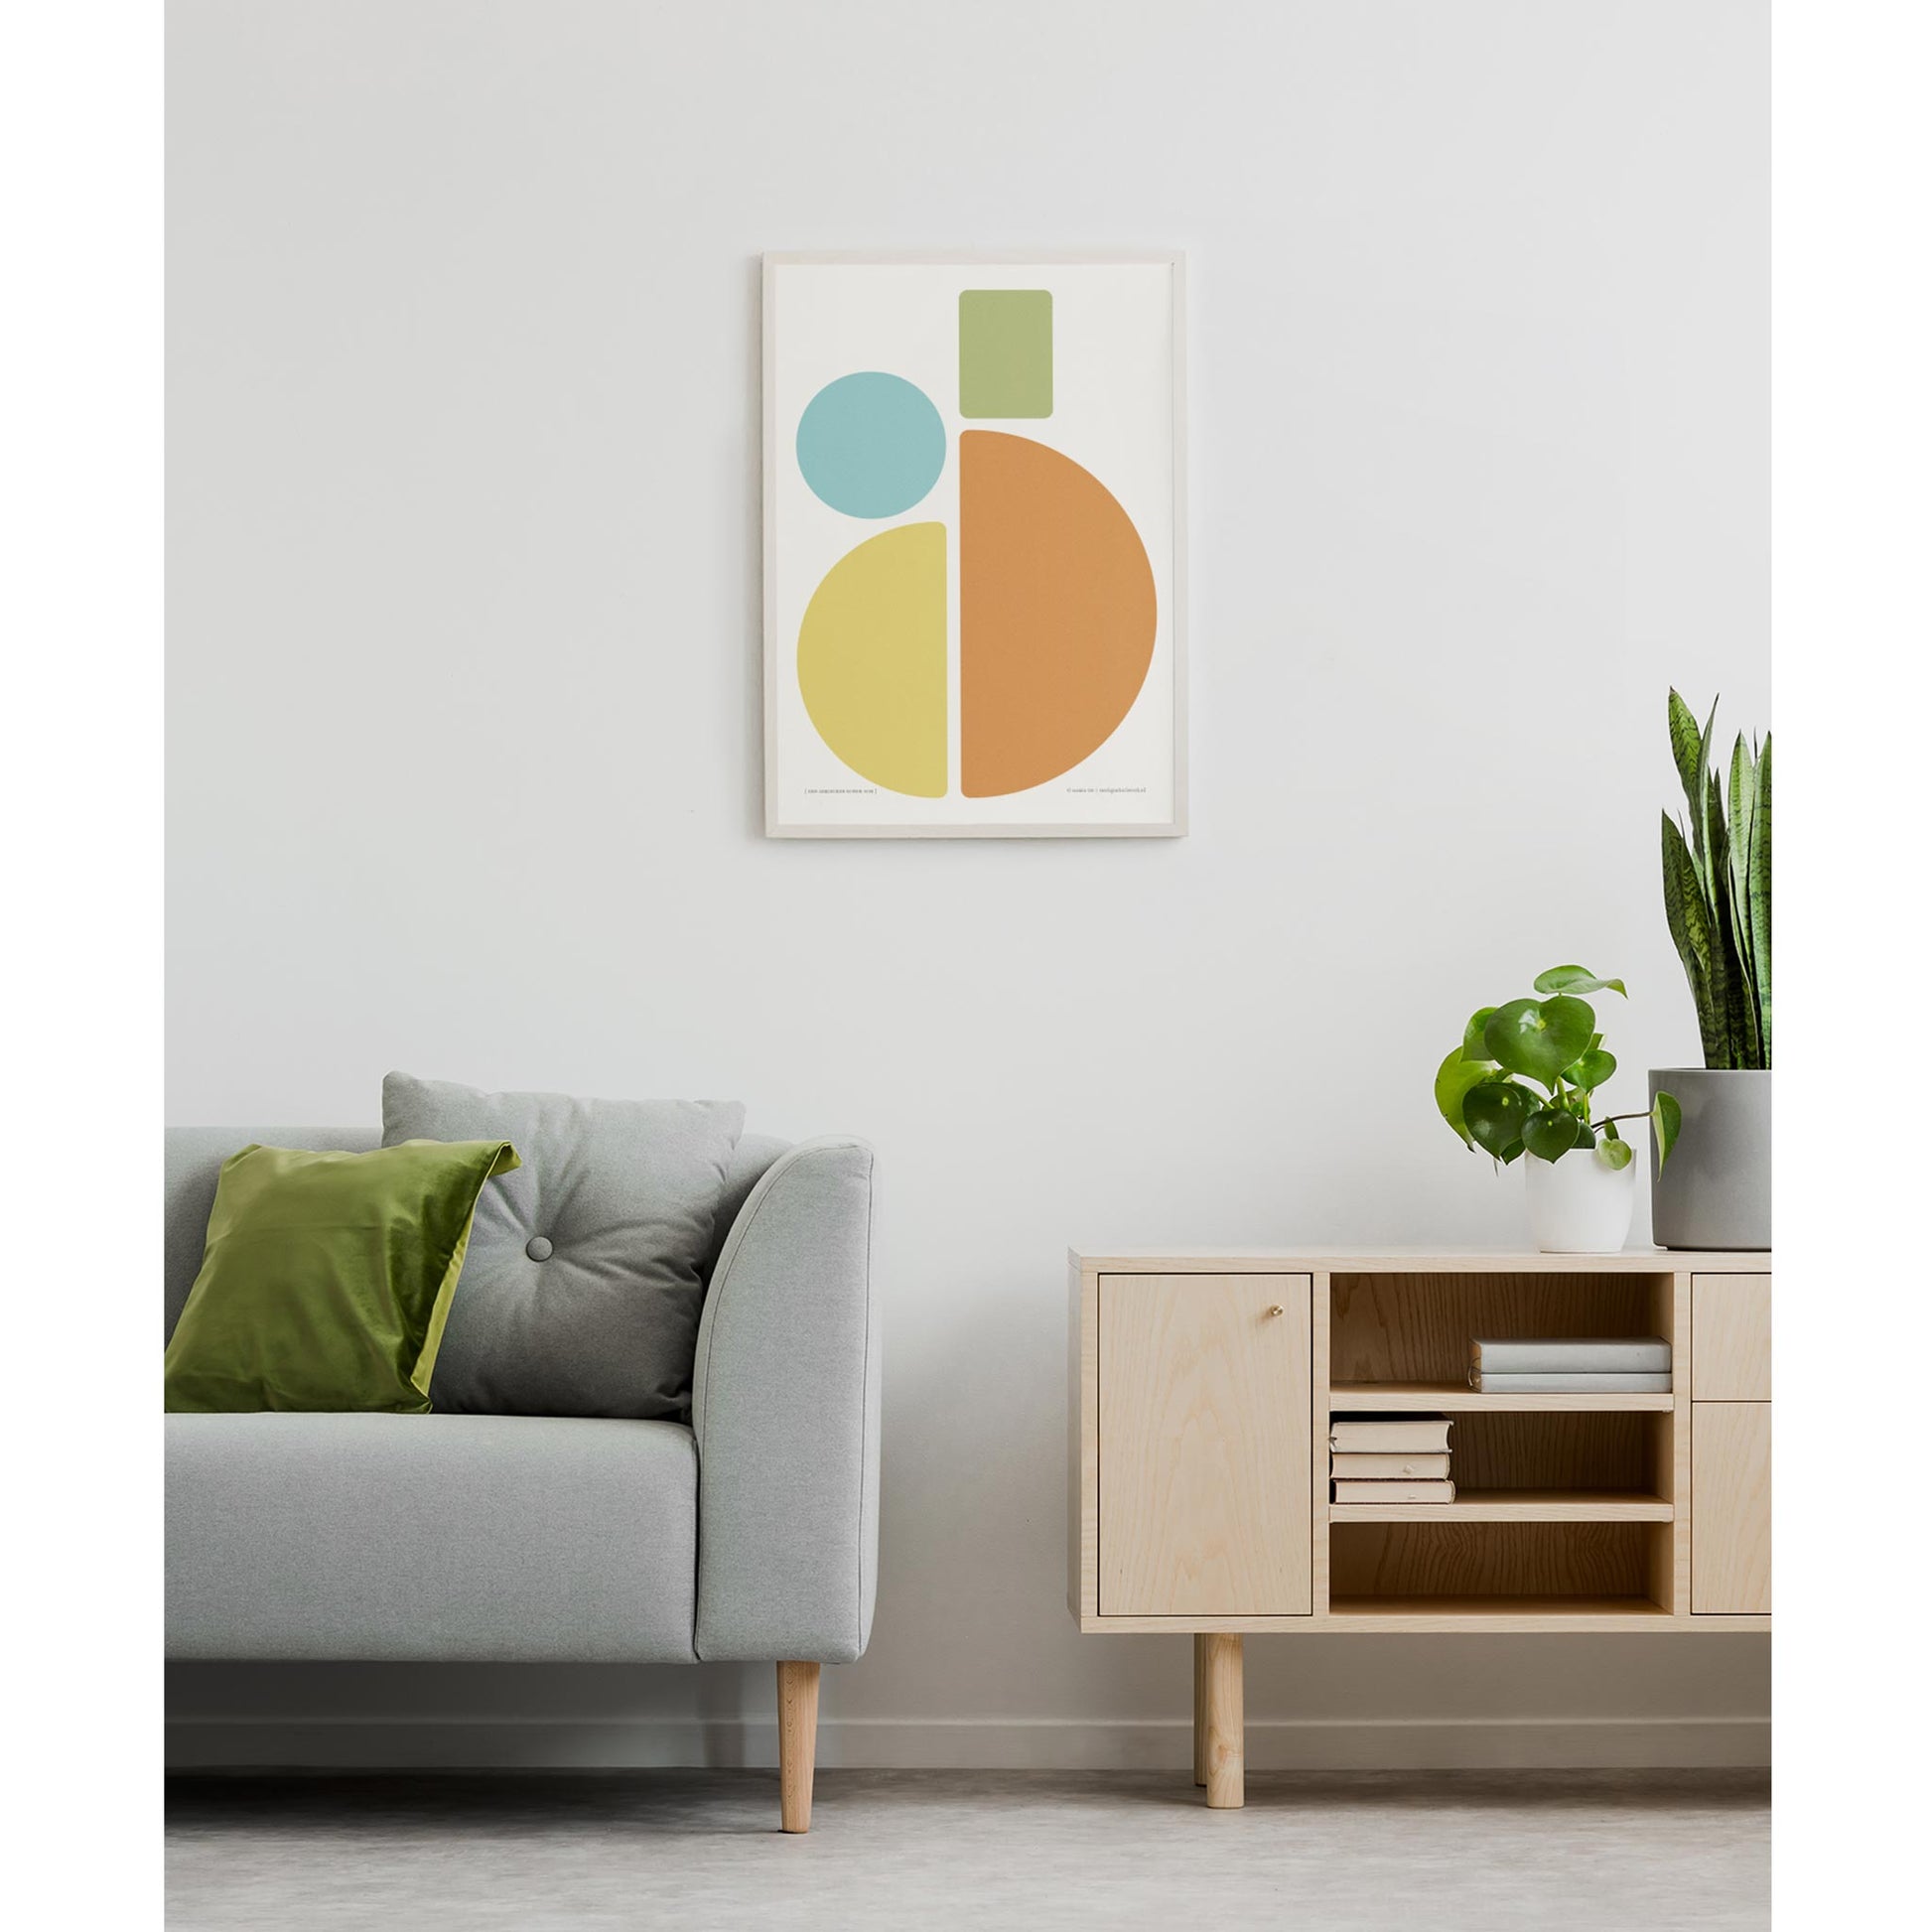 Productafbeelding, poster "een gekleurde ronde som", foto impressie 3, ingelijst hangend aan een witte wand in een interieur